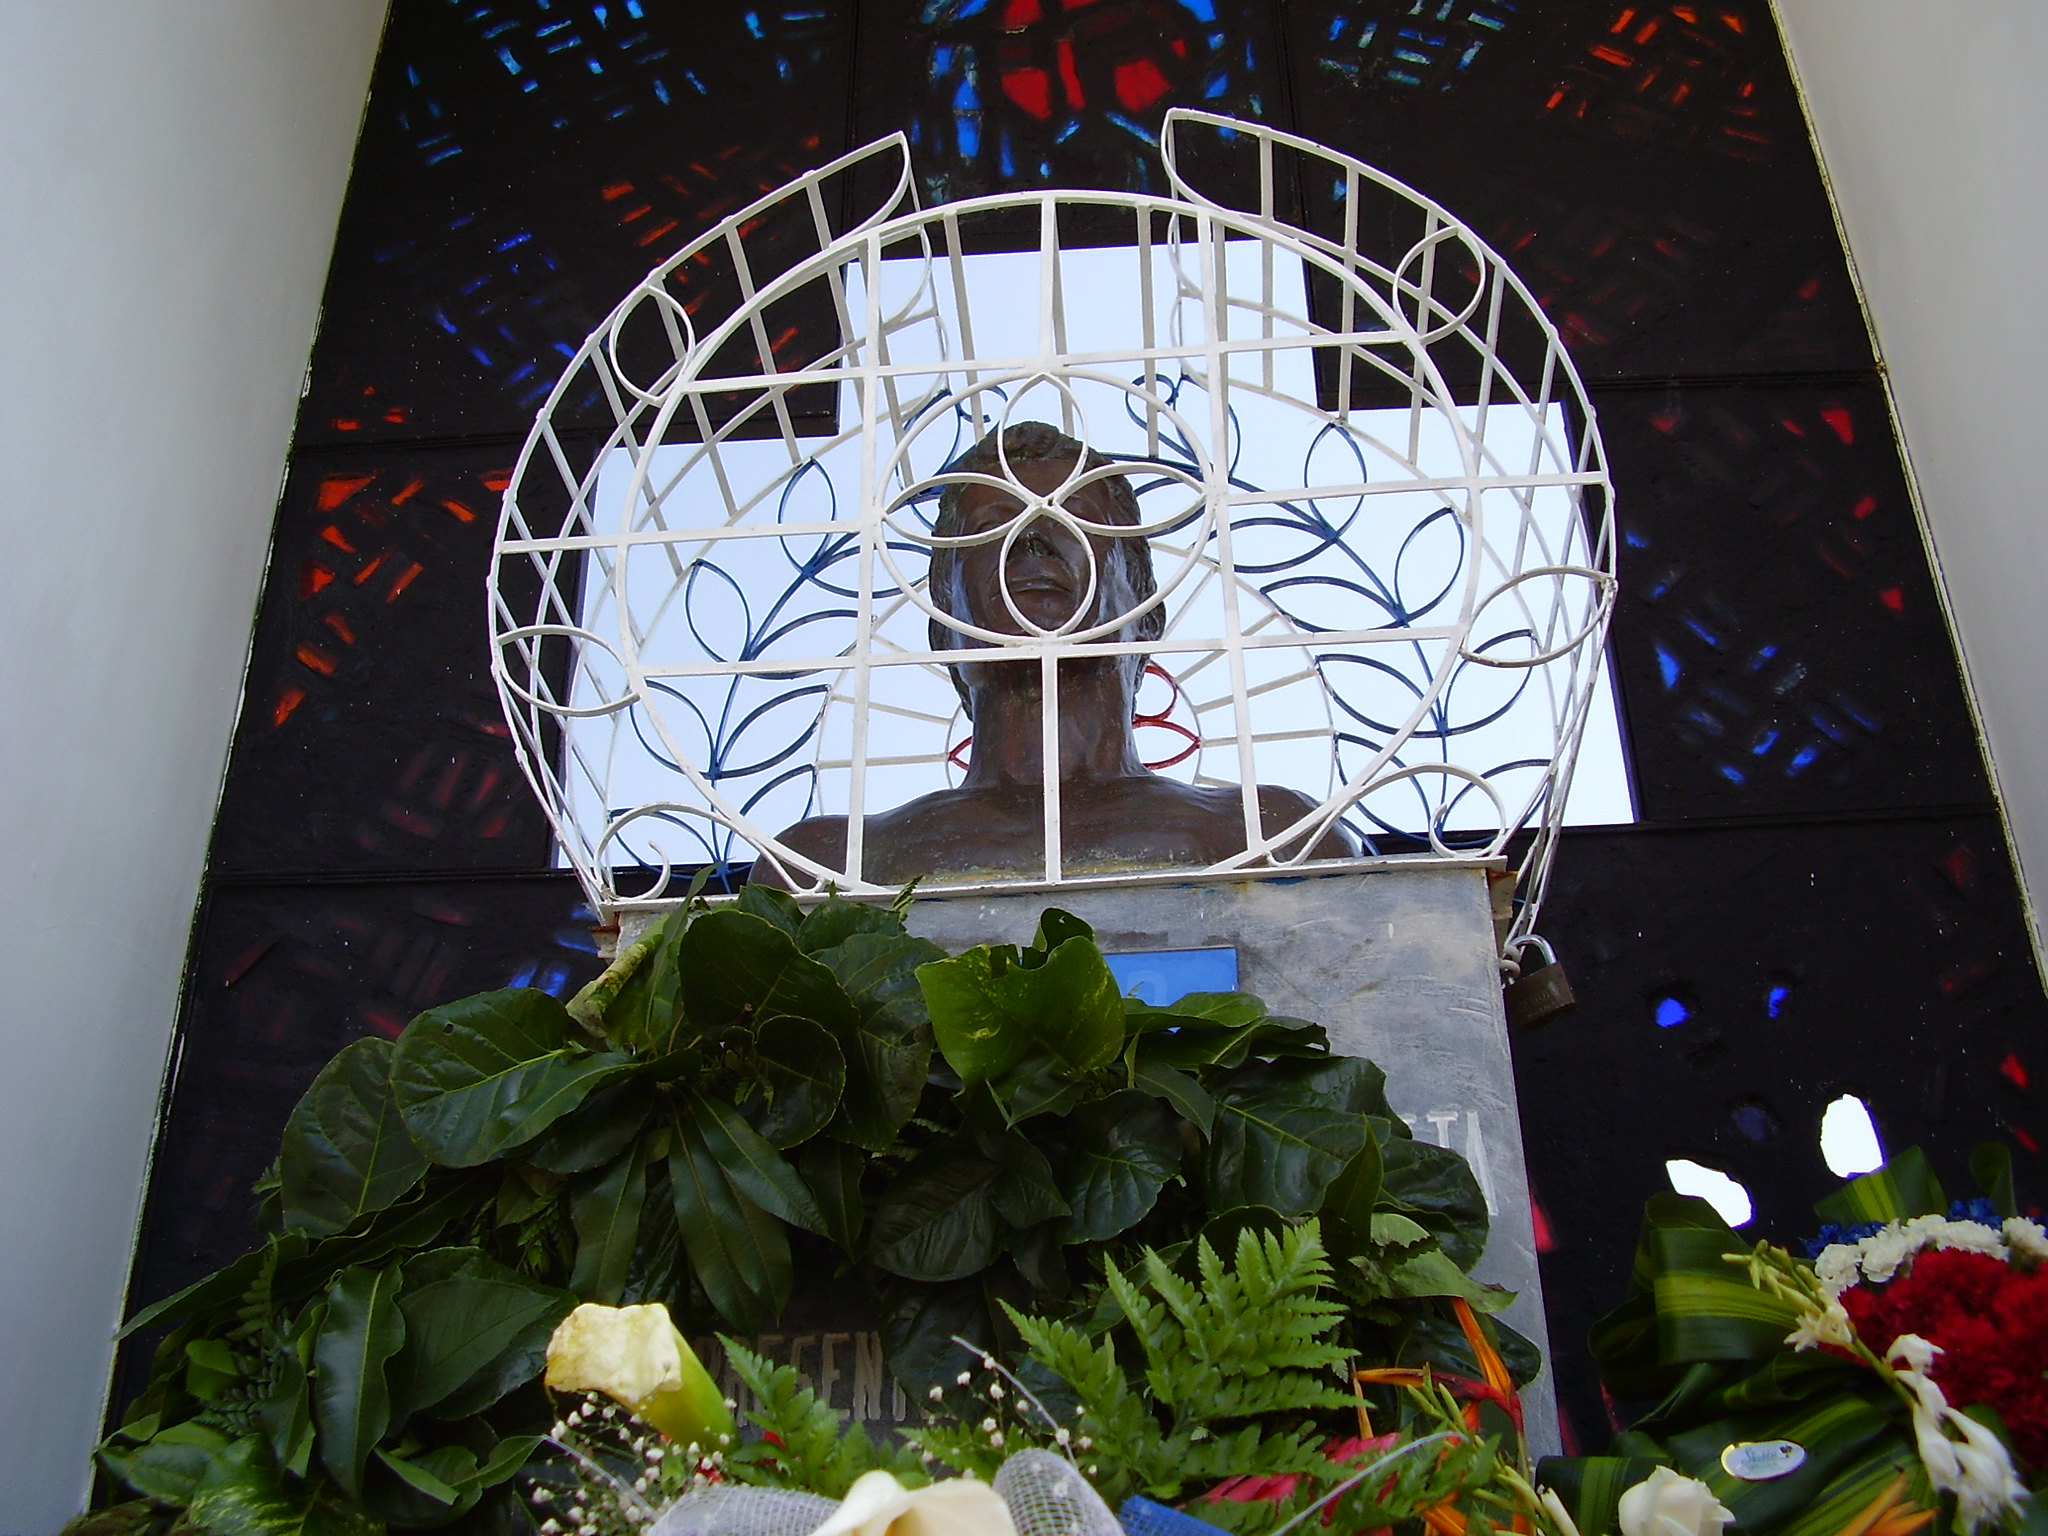 The tomb of Roberto D'Aubuisson, San Salvador, El Salvador, March 10, 2010. (BBC World Service/CC BY-NC 2.0)